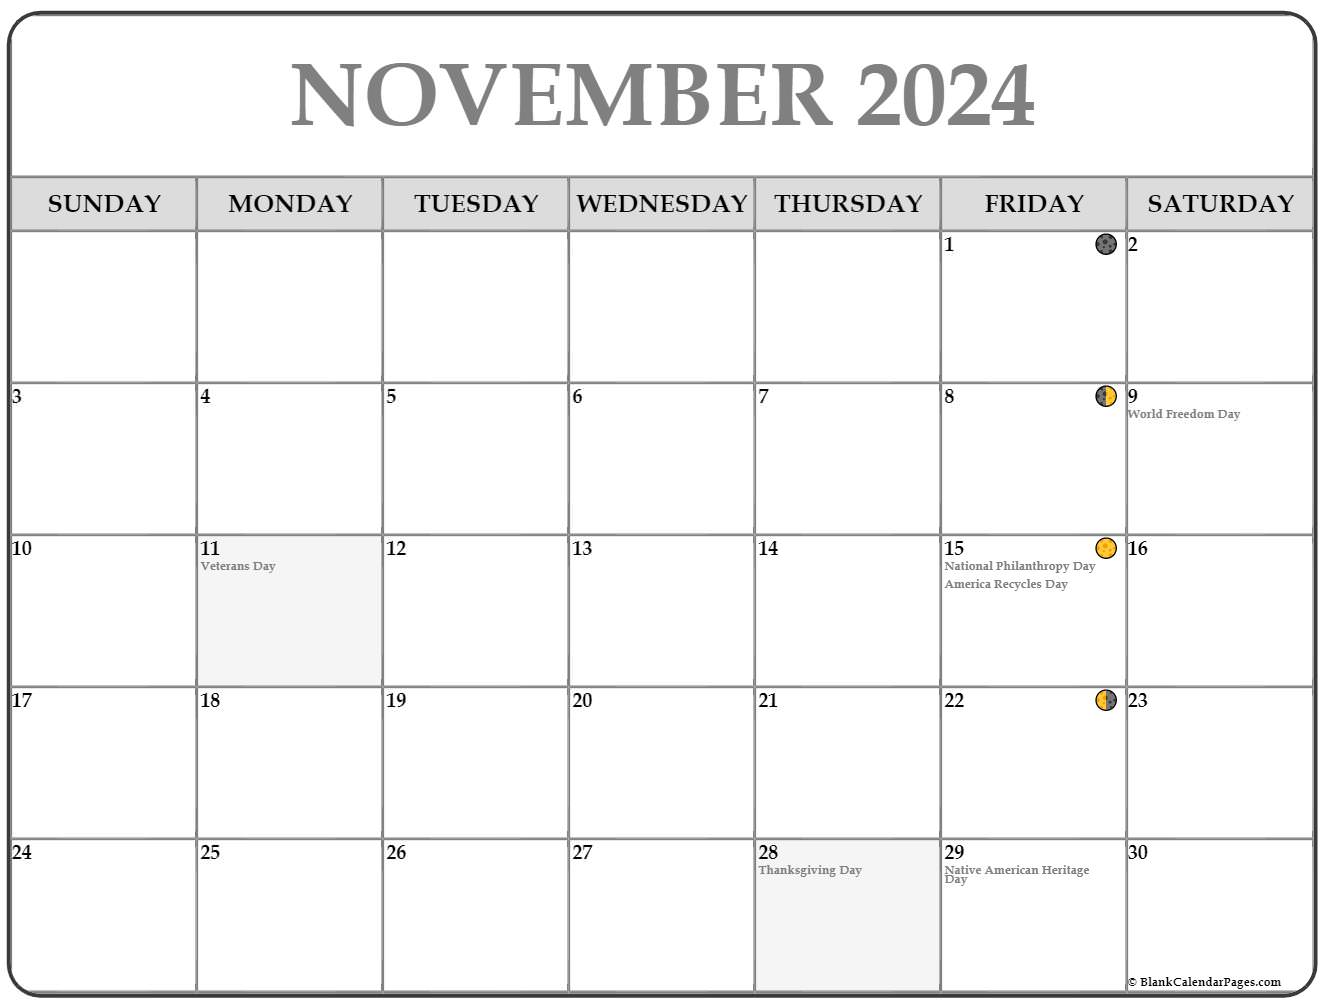 November 2024 Lunar Calendar | Moon Phase Calendar